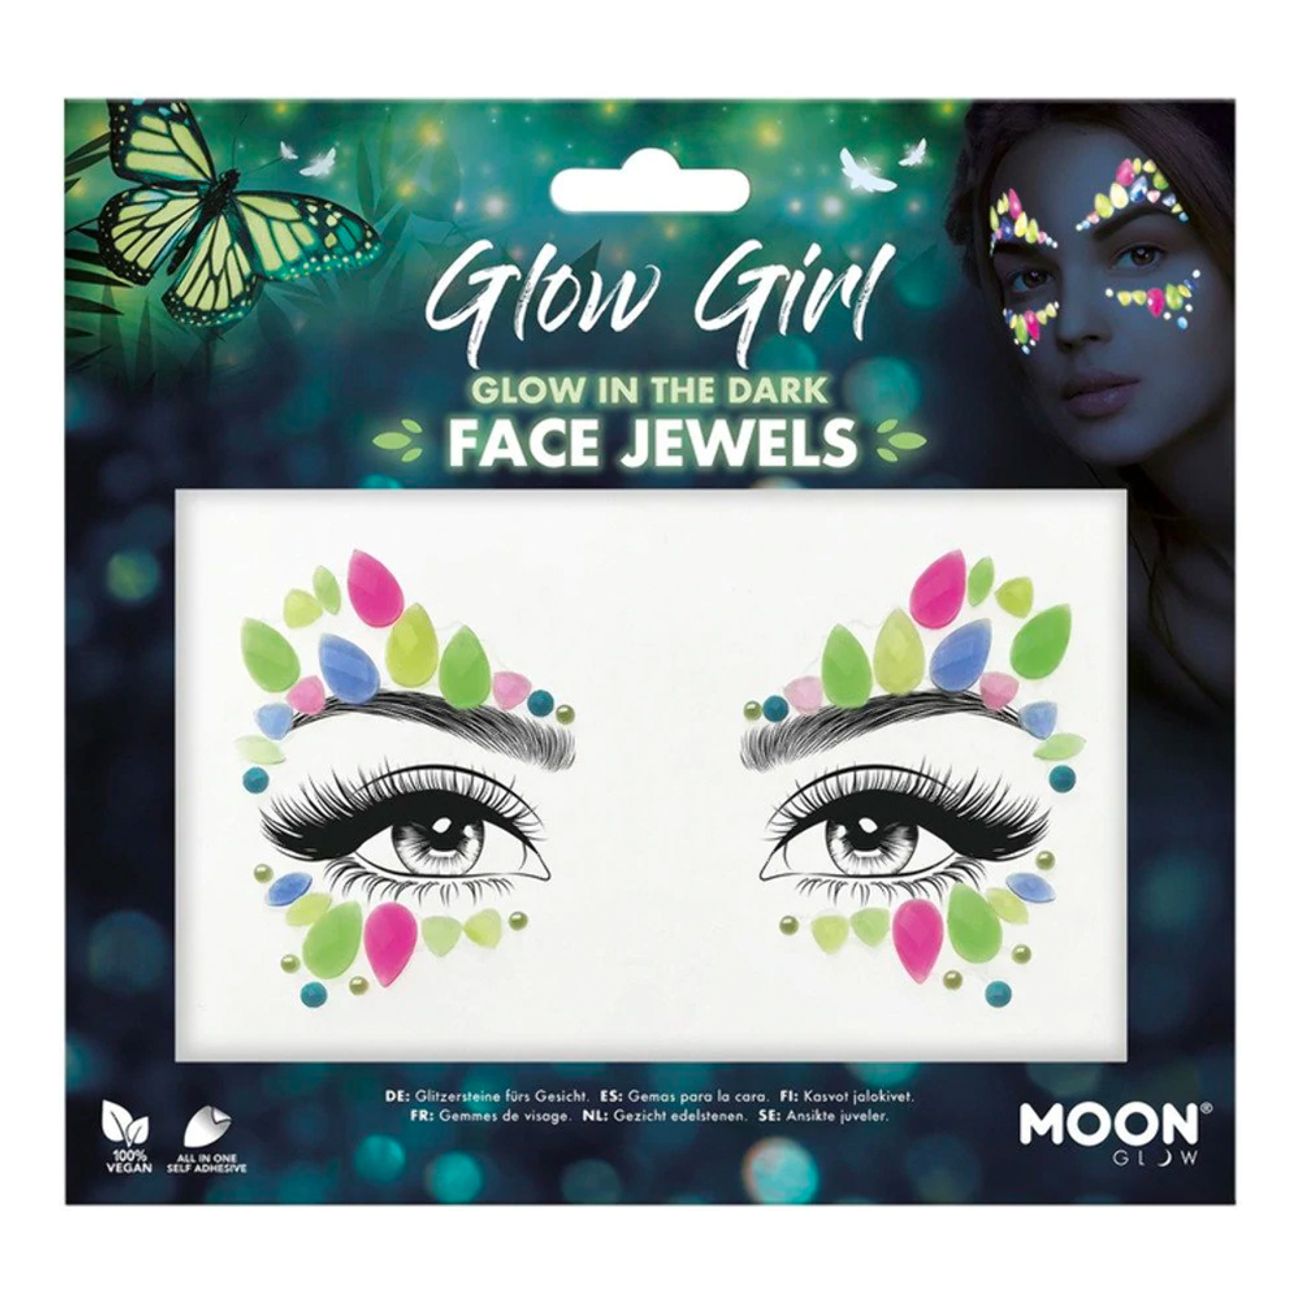 face-jewels-glow-in-the-dark-glow-girl-84449-1